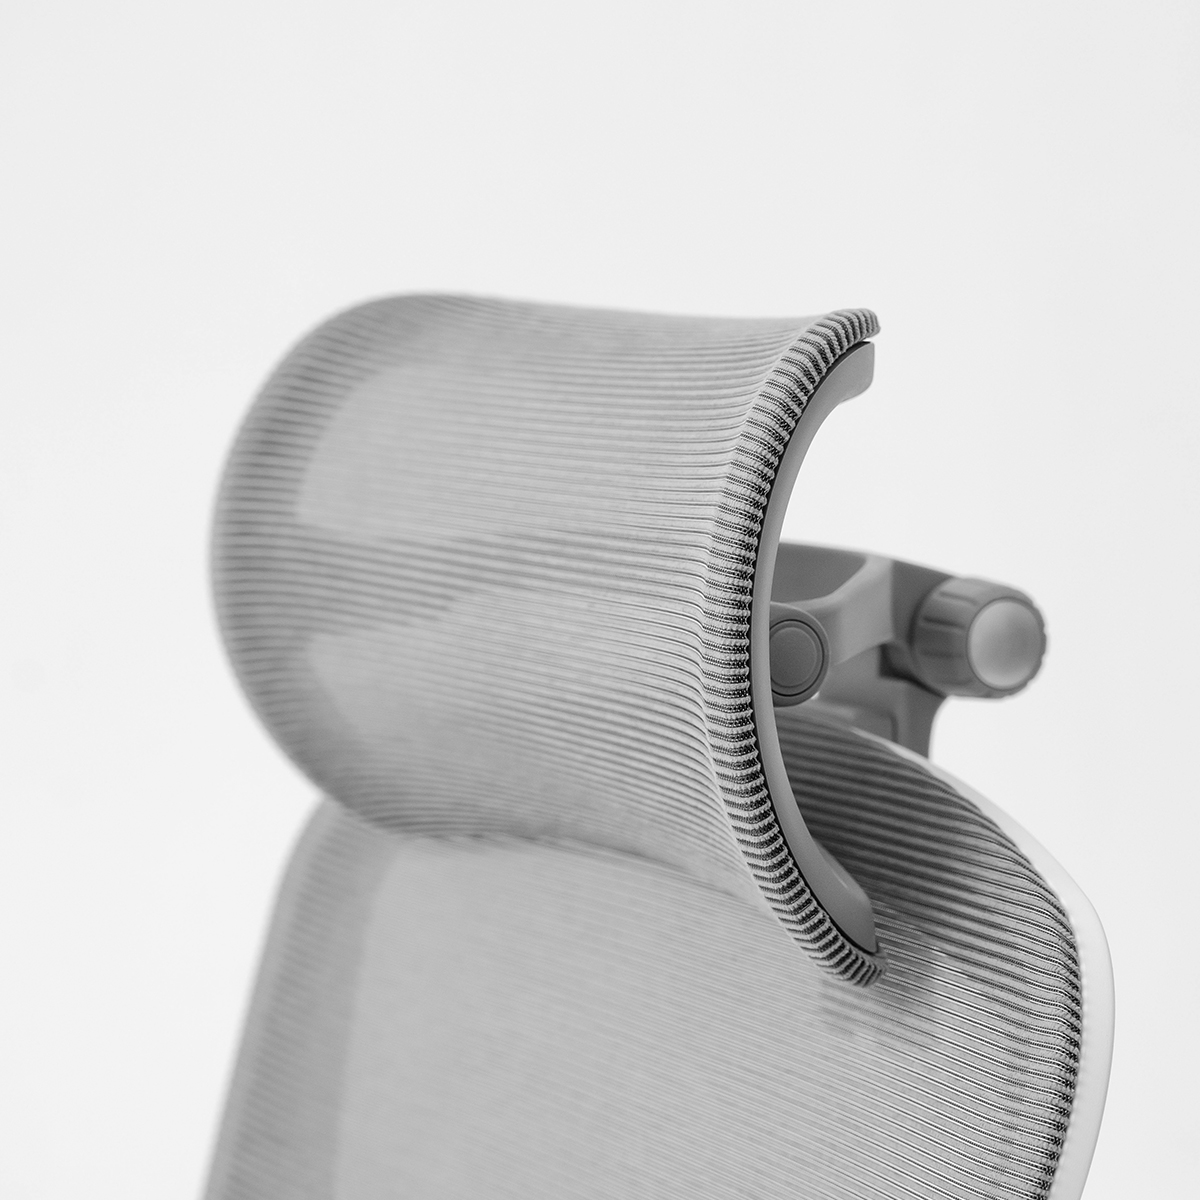 Ghế công thái học Epione Easy Chair SE bản chân KIM LOẠI mới nhất | Ghế văn phòng giảm đau mỏi vai gáy, thắt lưng